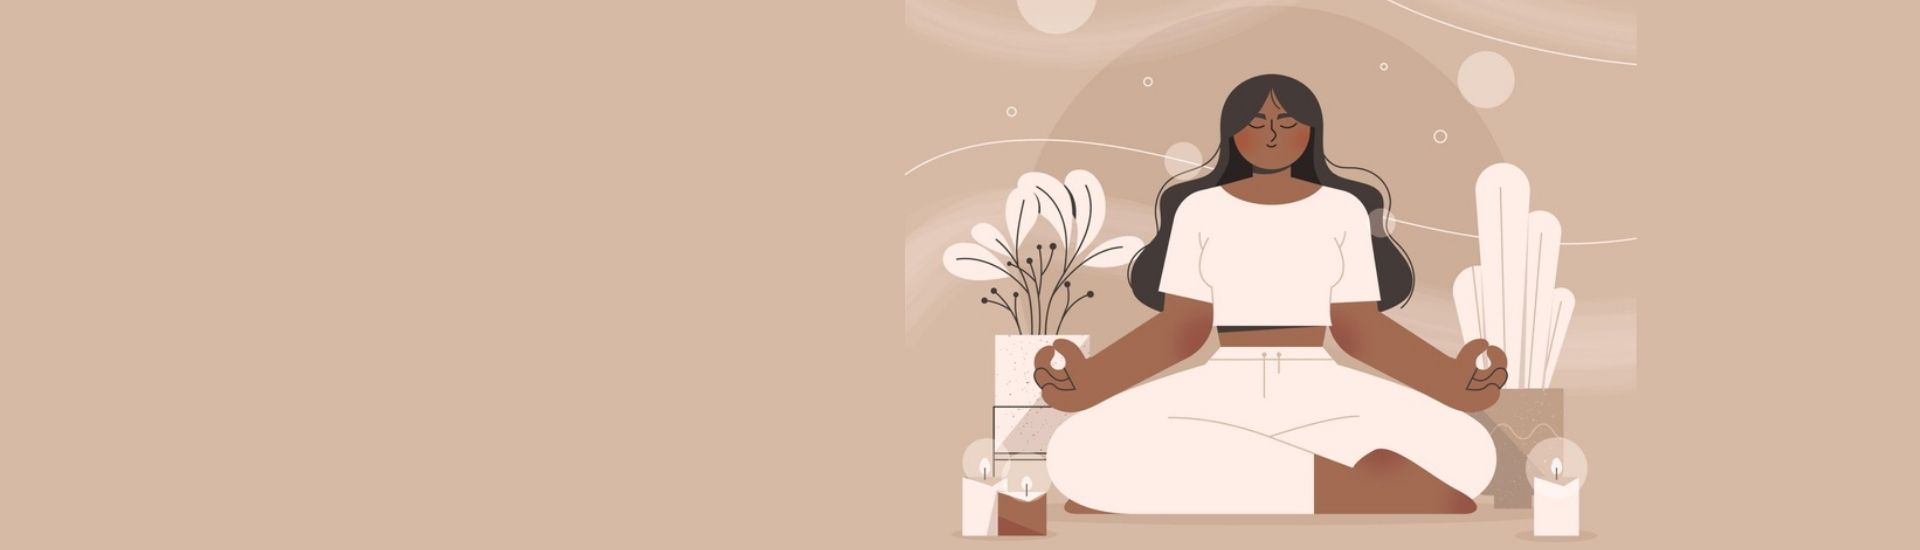 En la imagen se ve una ilustración de una mujer sentada en posición de yoga mientras medita y se relaja